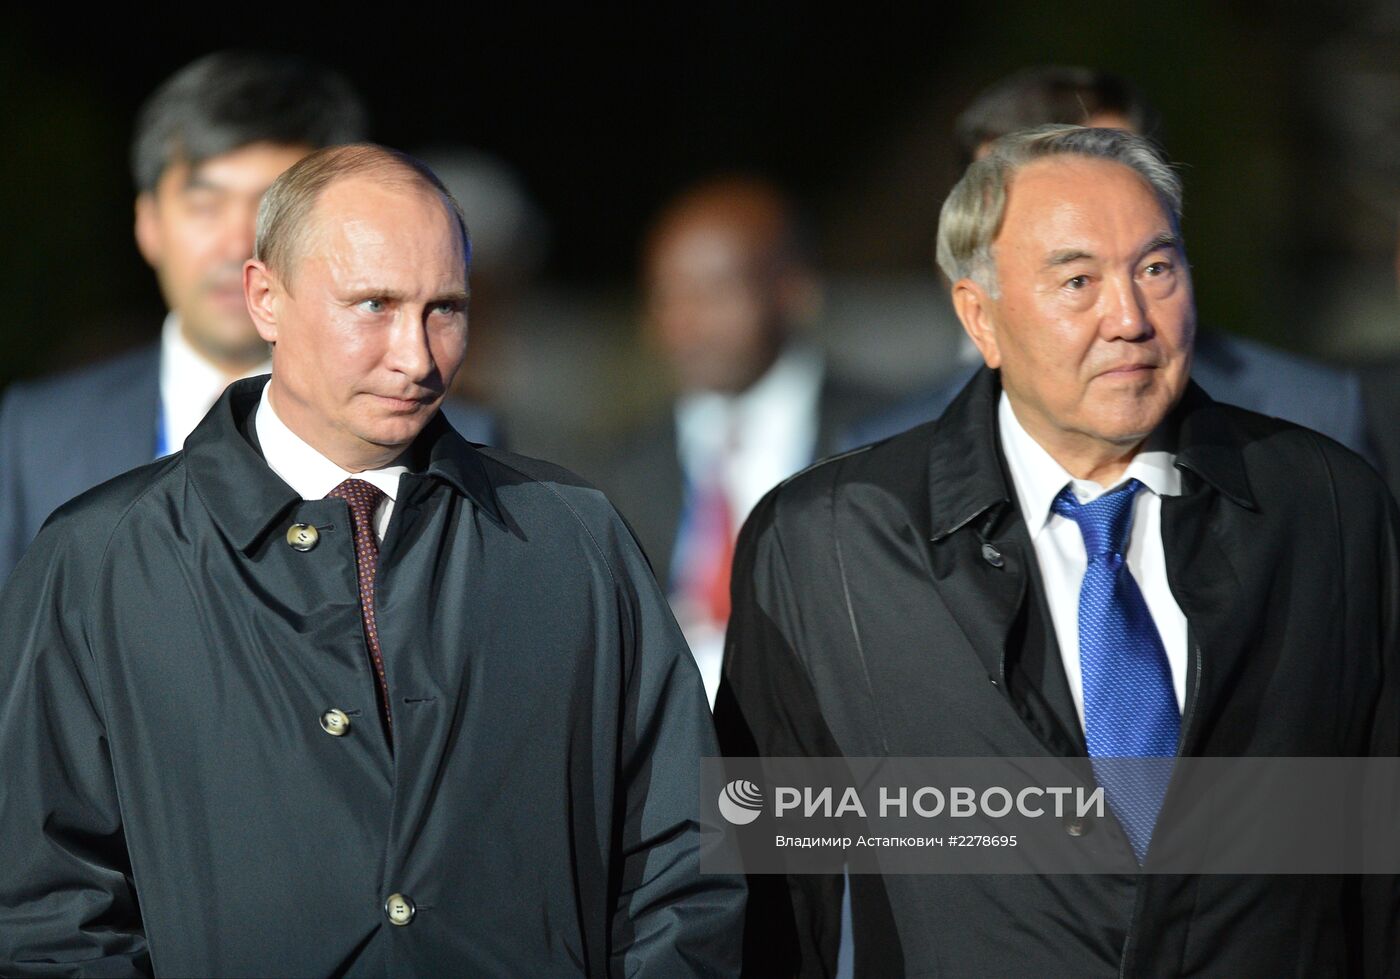 В.Путин на представлении для участников саммита "Группы двадцати